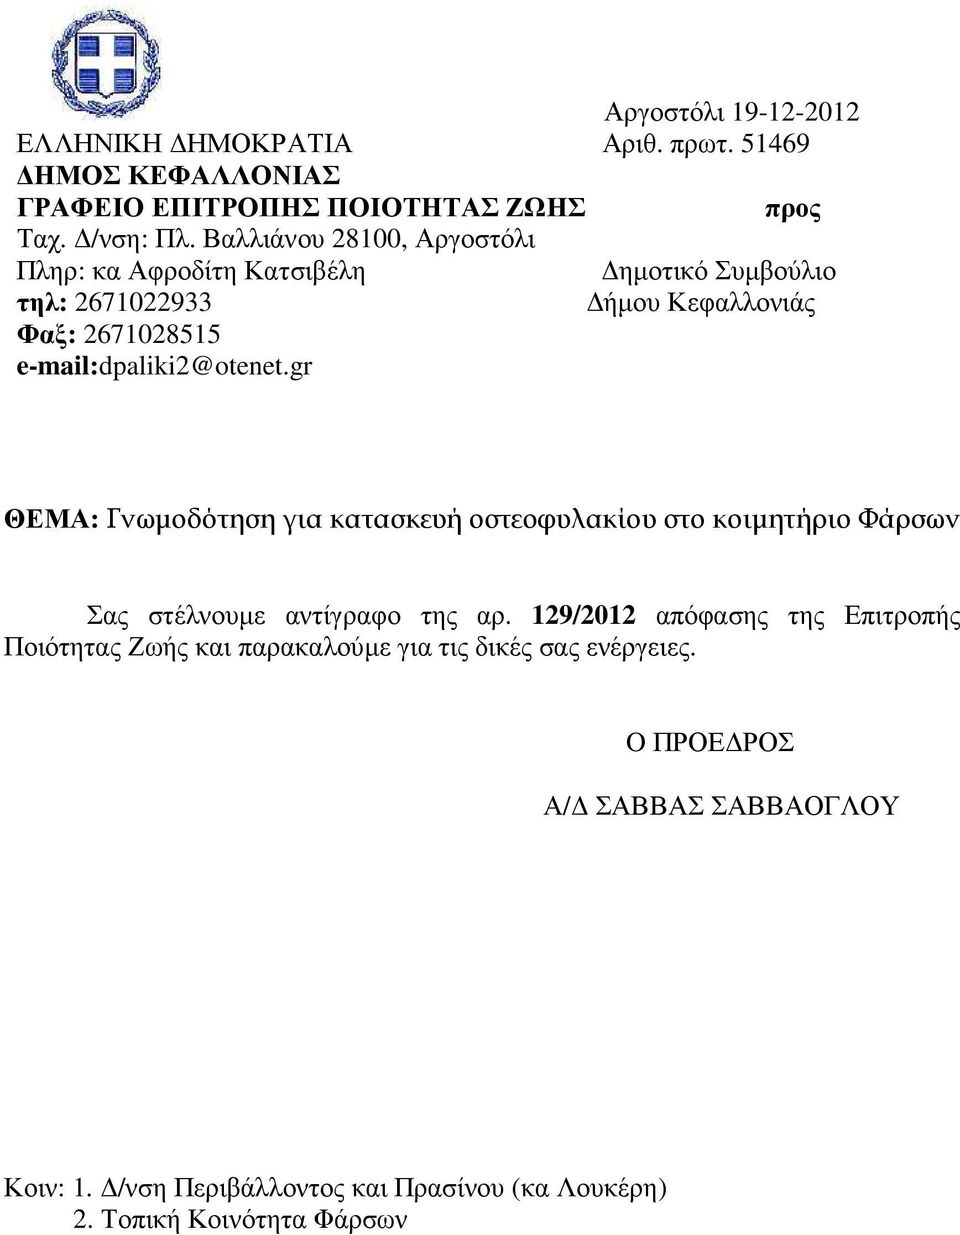 e-mail:dpaliki2@otenet.gr ΘΕΜΑ: Γνωµοδότηση για κατασκευή οστεοφυλακίου στο κοιµητήριο Φάρσων Σας στέλνουµε αντίγραφο της αρ.